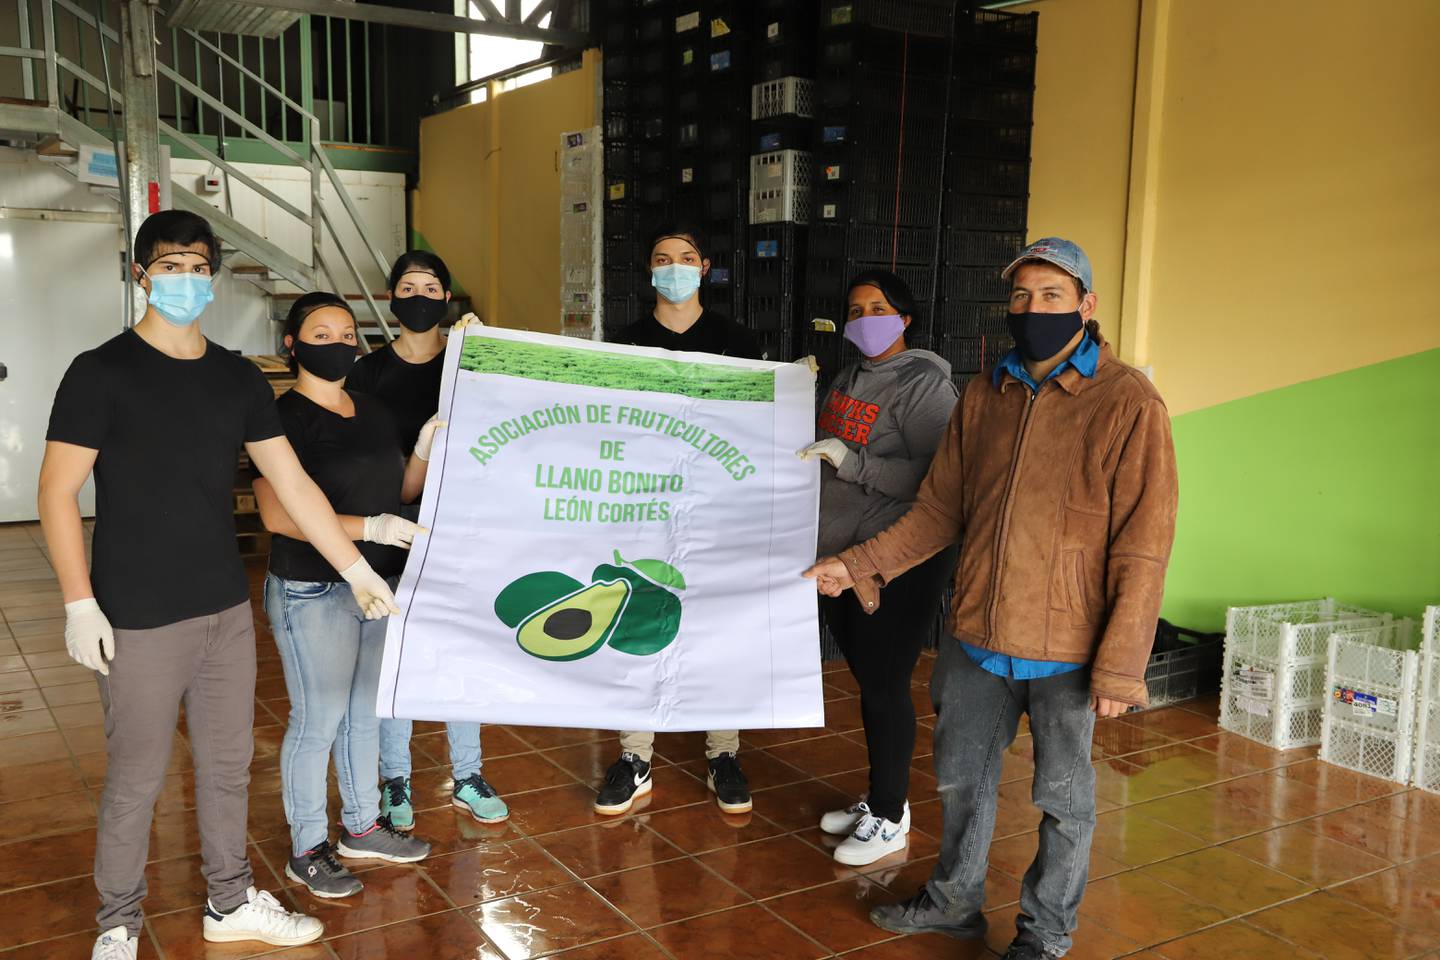 La Asociación de Fruticultores de Llano Bonito de León Cortés logró mejorar su producción de aguacate Hass al apoyarse en análisis tecnológicos